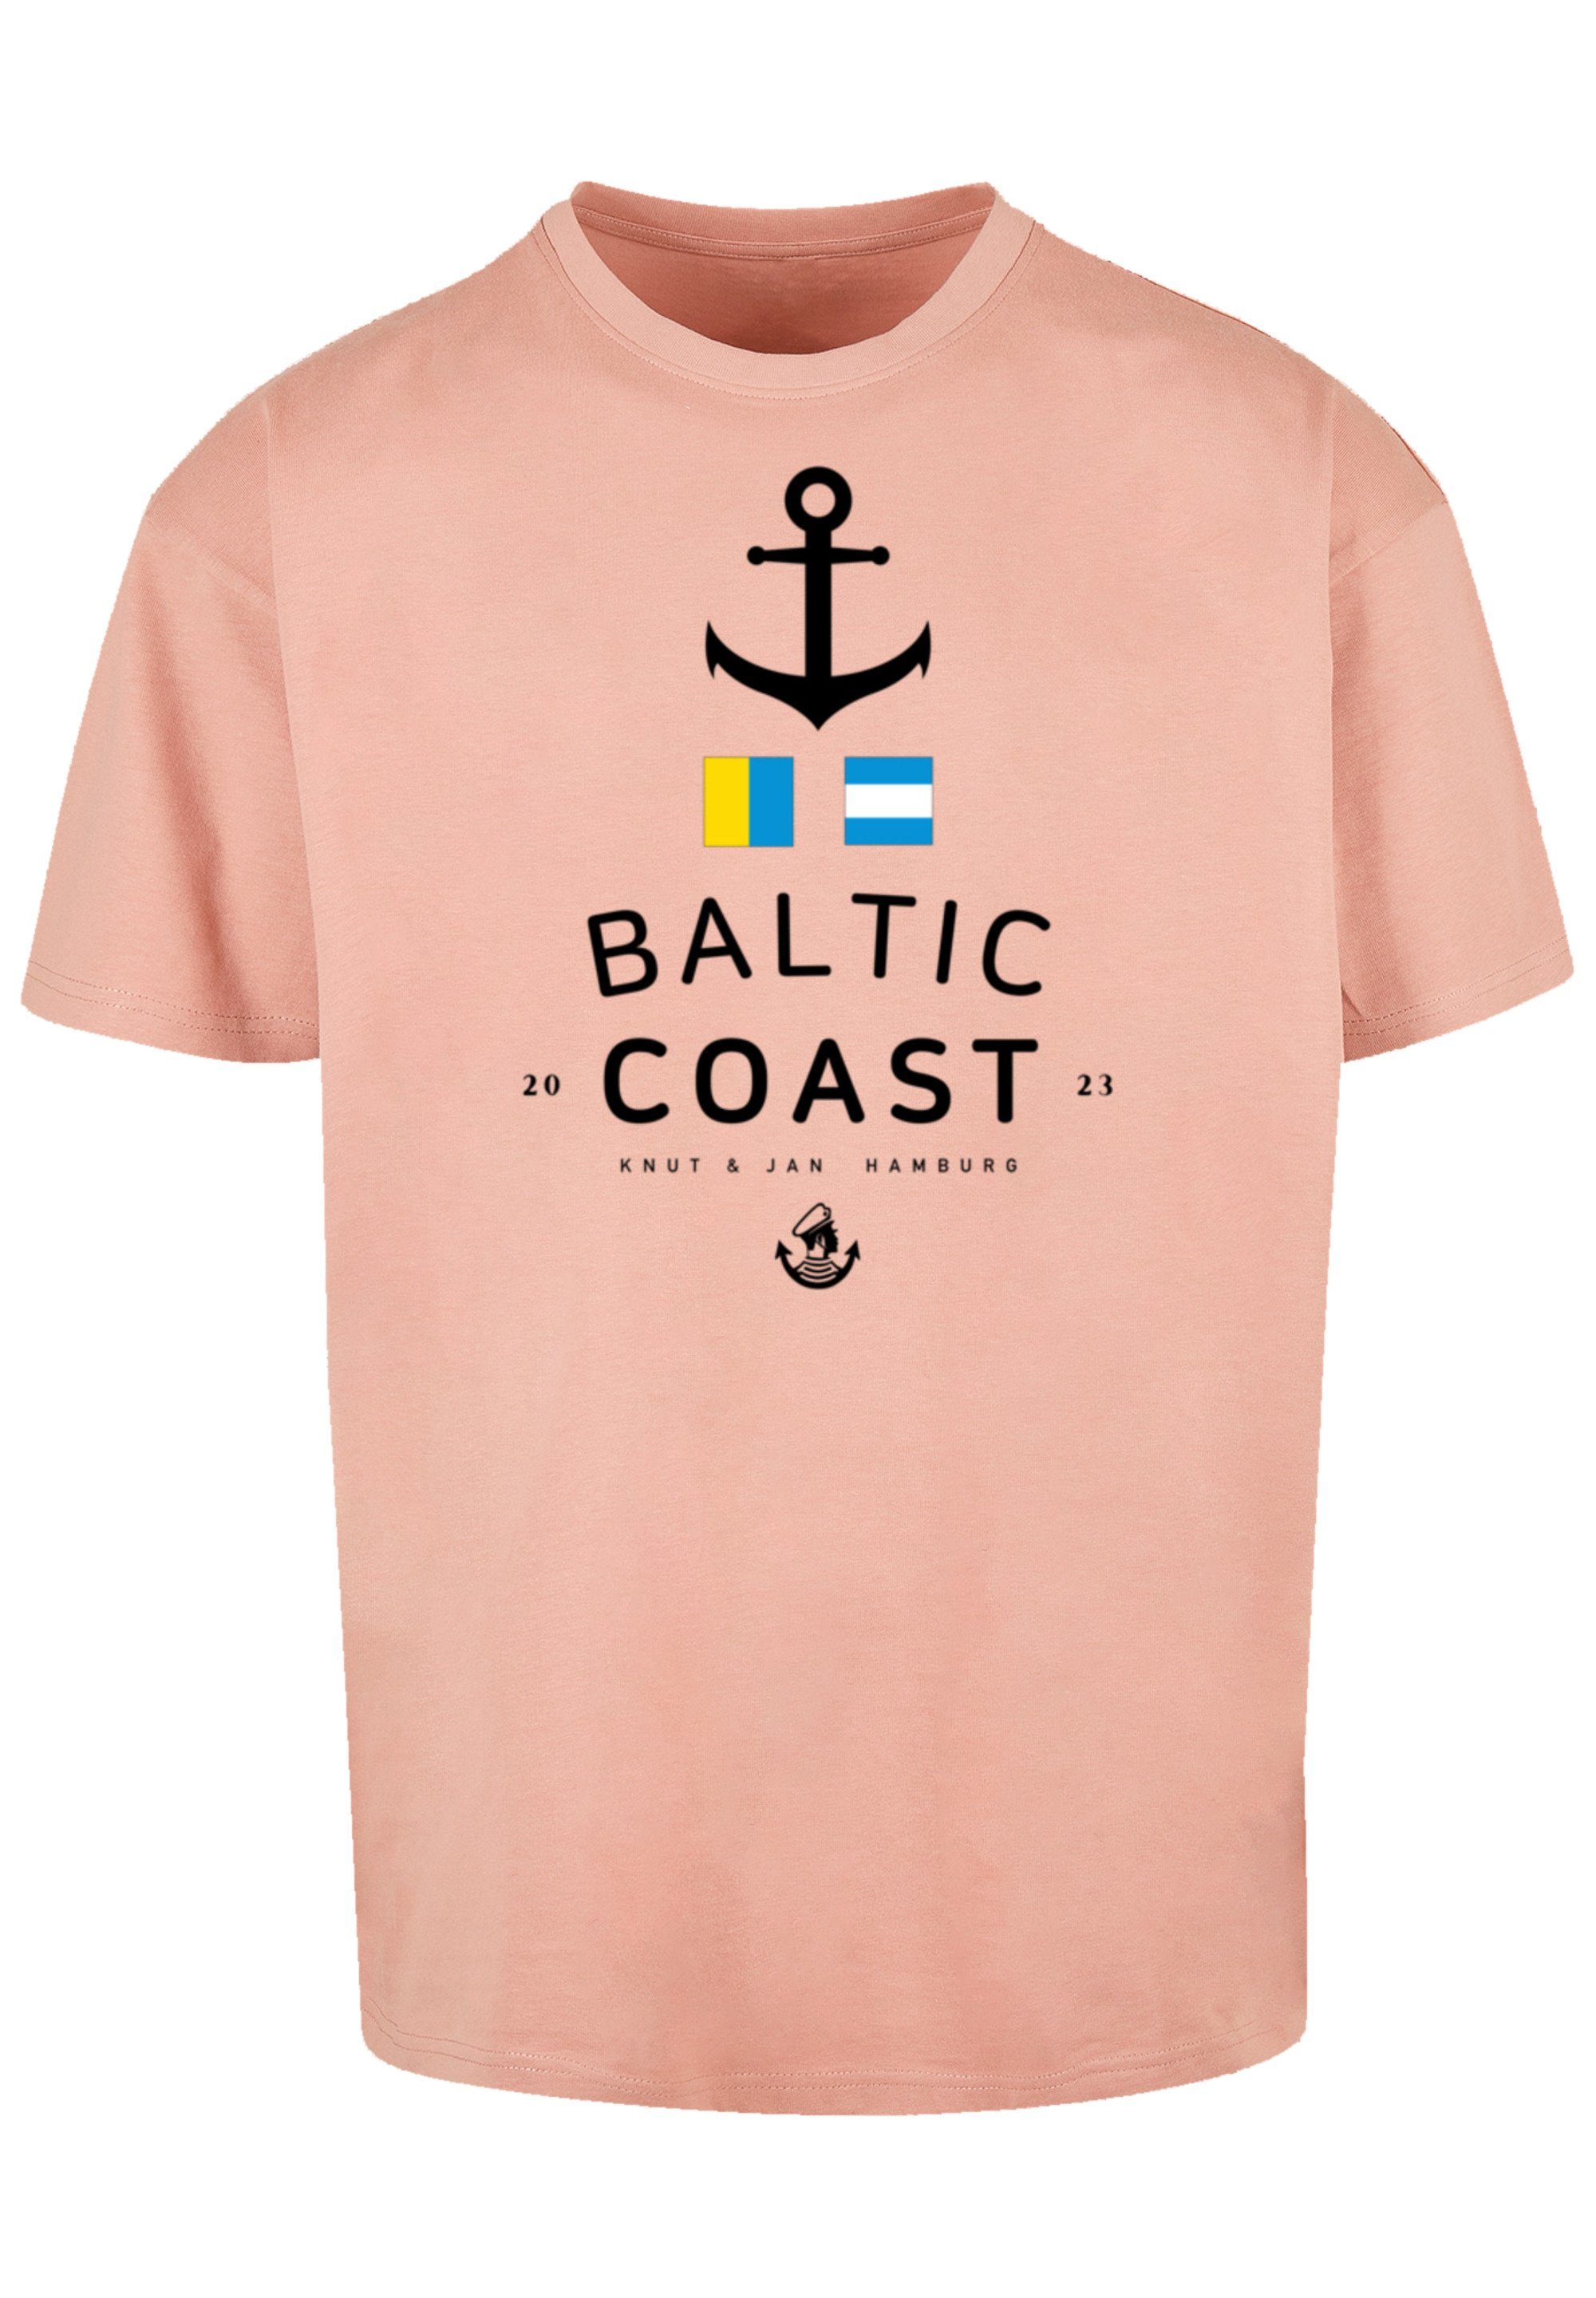 Print Sea & Jan Hamburg T-Shirt Baltic amber Ostsee F4NT4STIC Knut